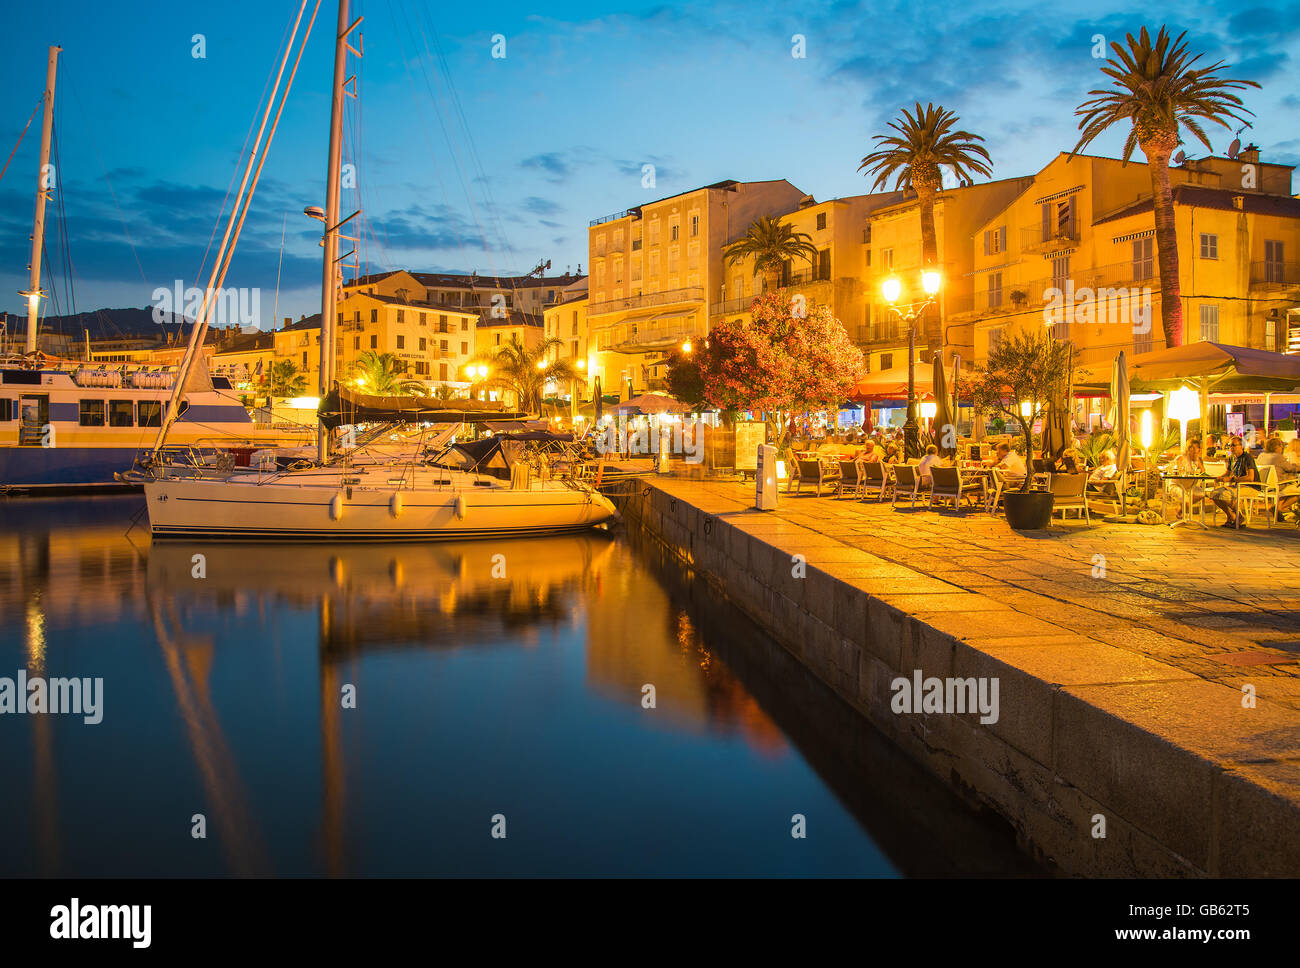 Hafen von CALVI, Korsika - 30. Juni 2015: historische Gebäude und Yacht Boote im Hafen von Calvi in der Nacht. Calvi ist luxuriöse marina Stockfoto